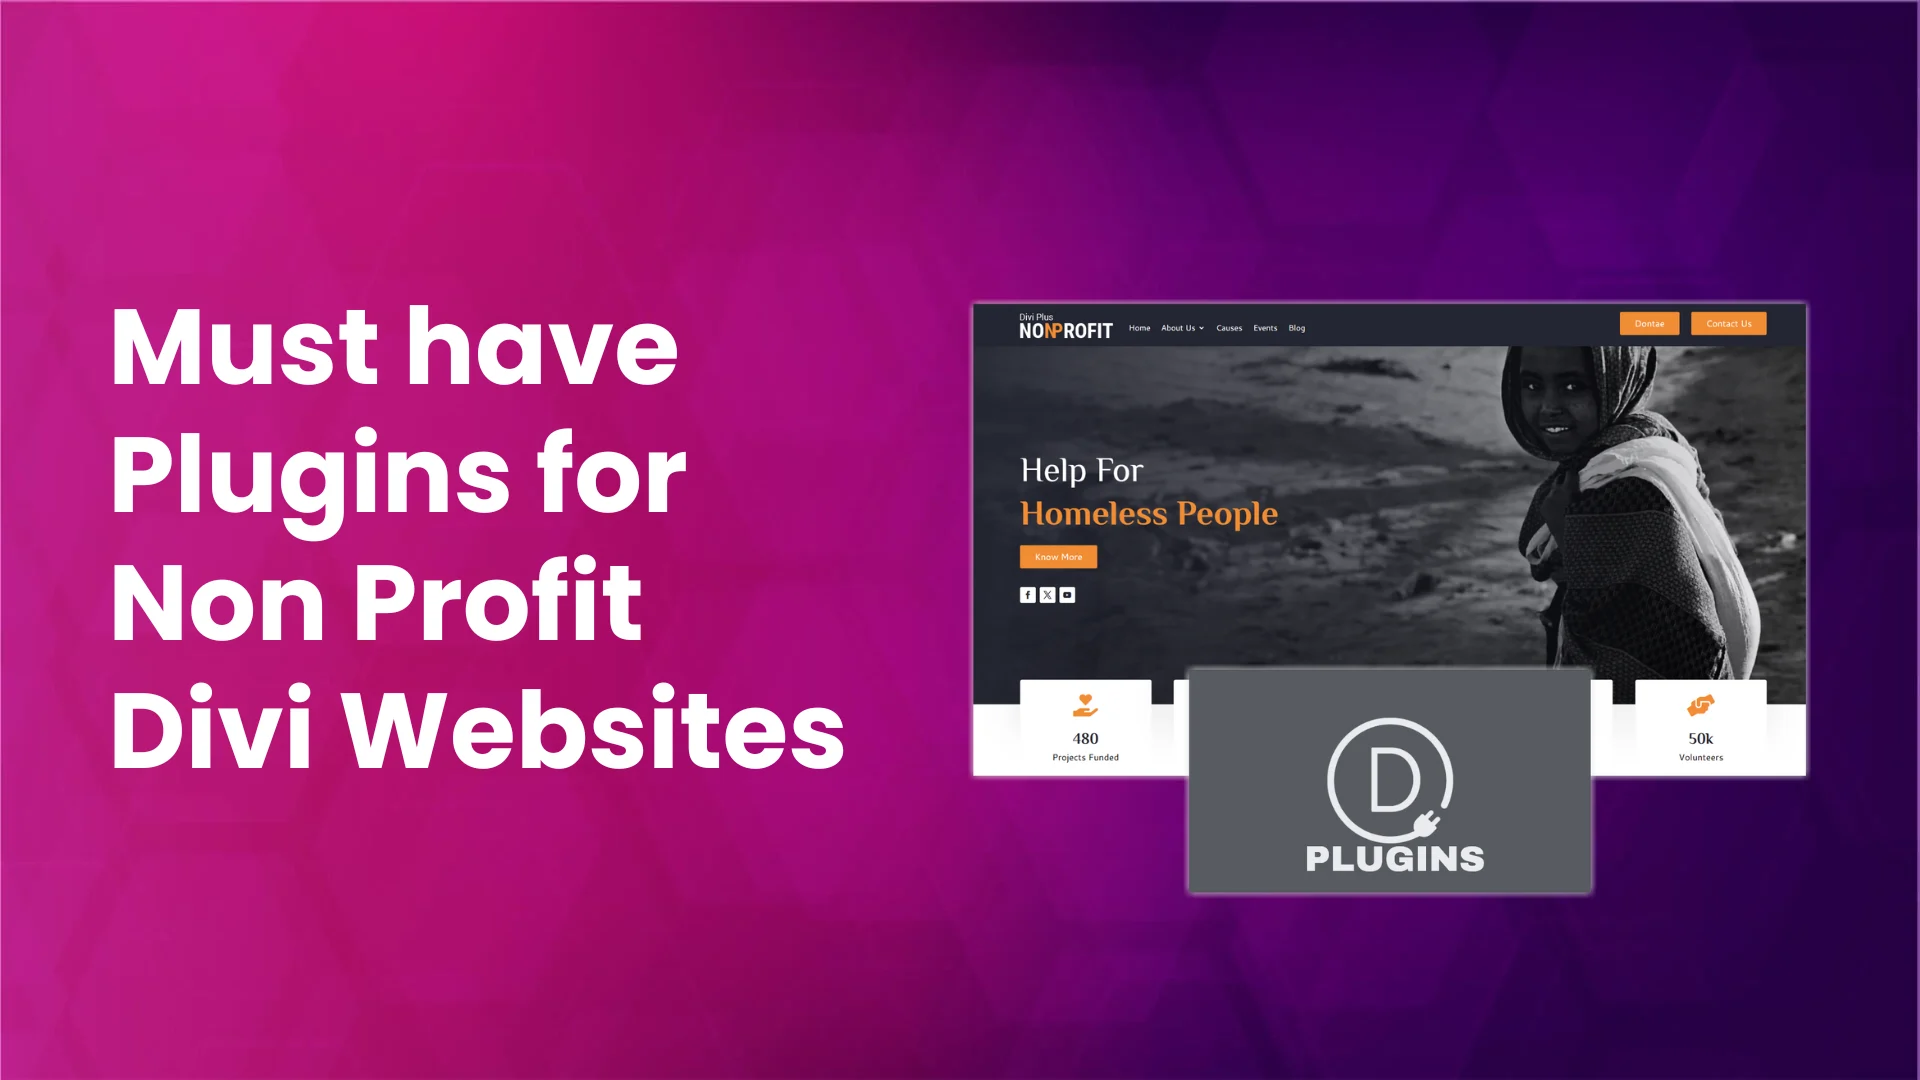 Plugins for non profit Divi websites